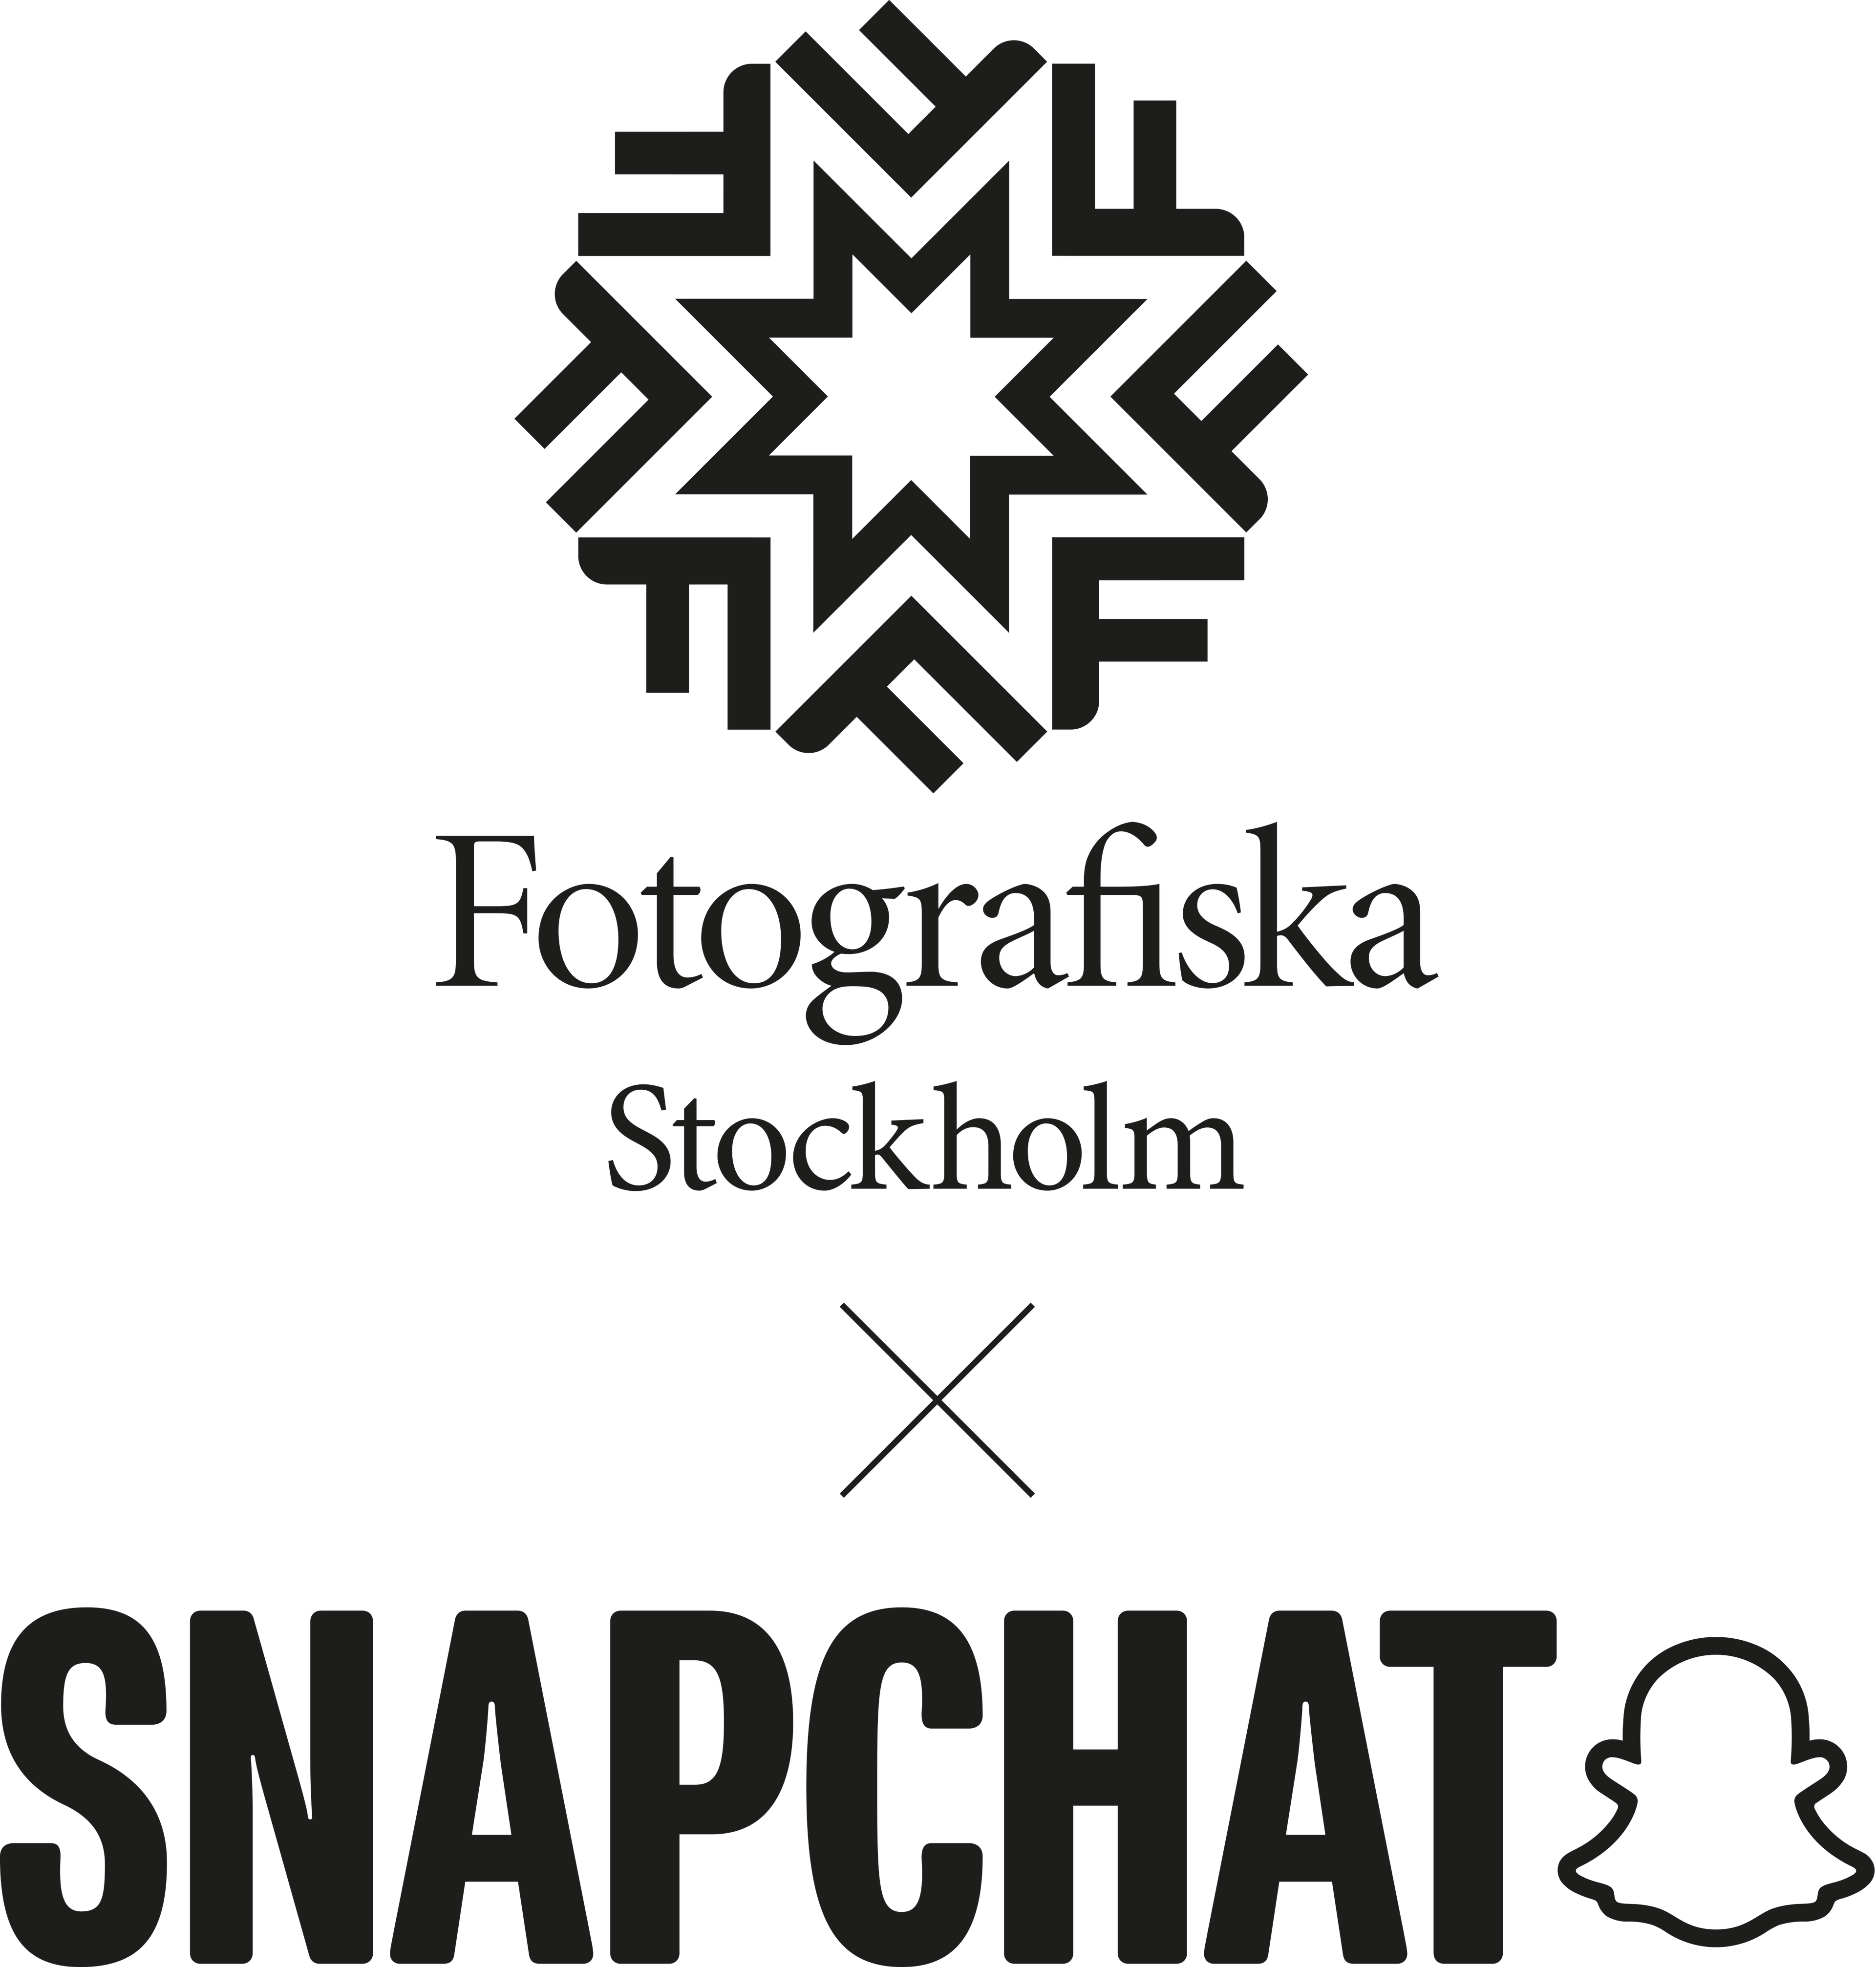 Fotografiskas och Snapchats logotyper